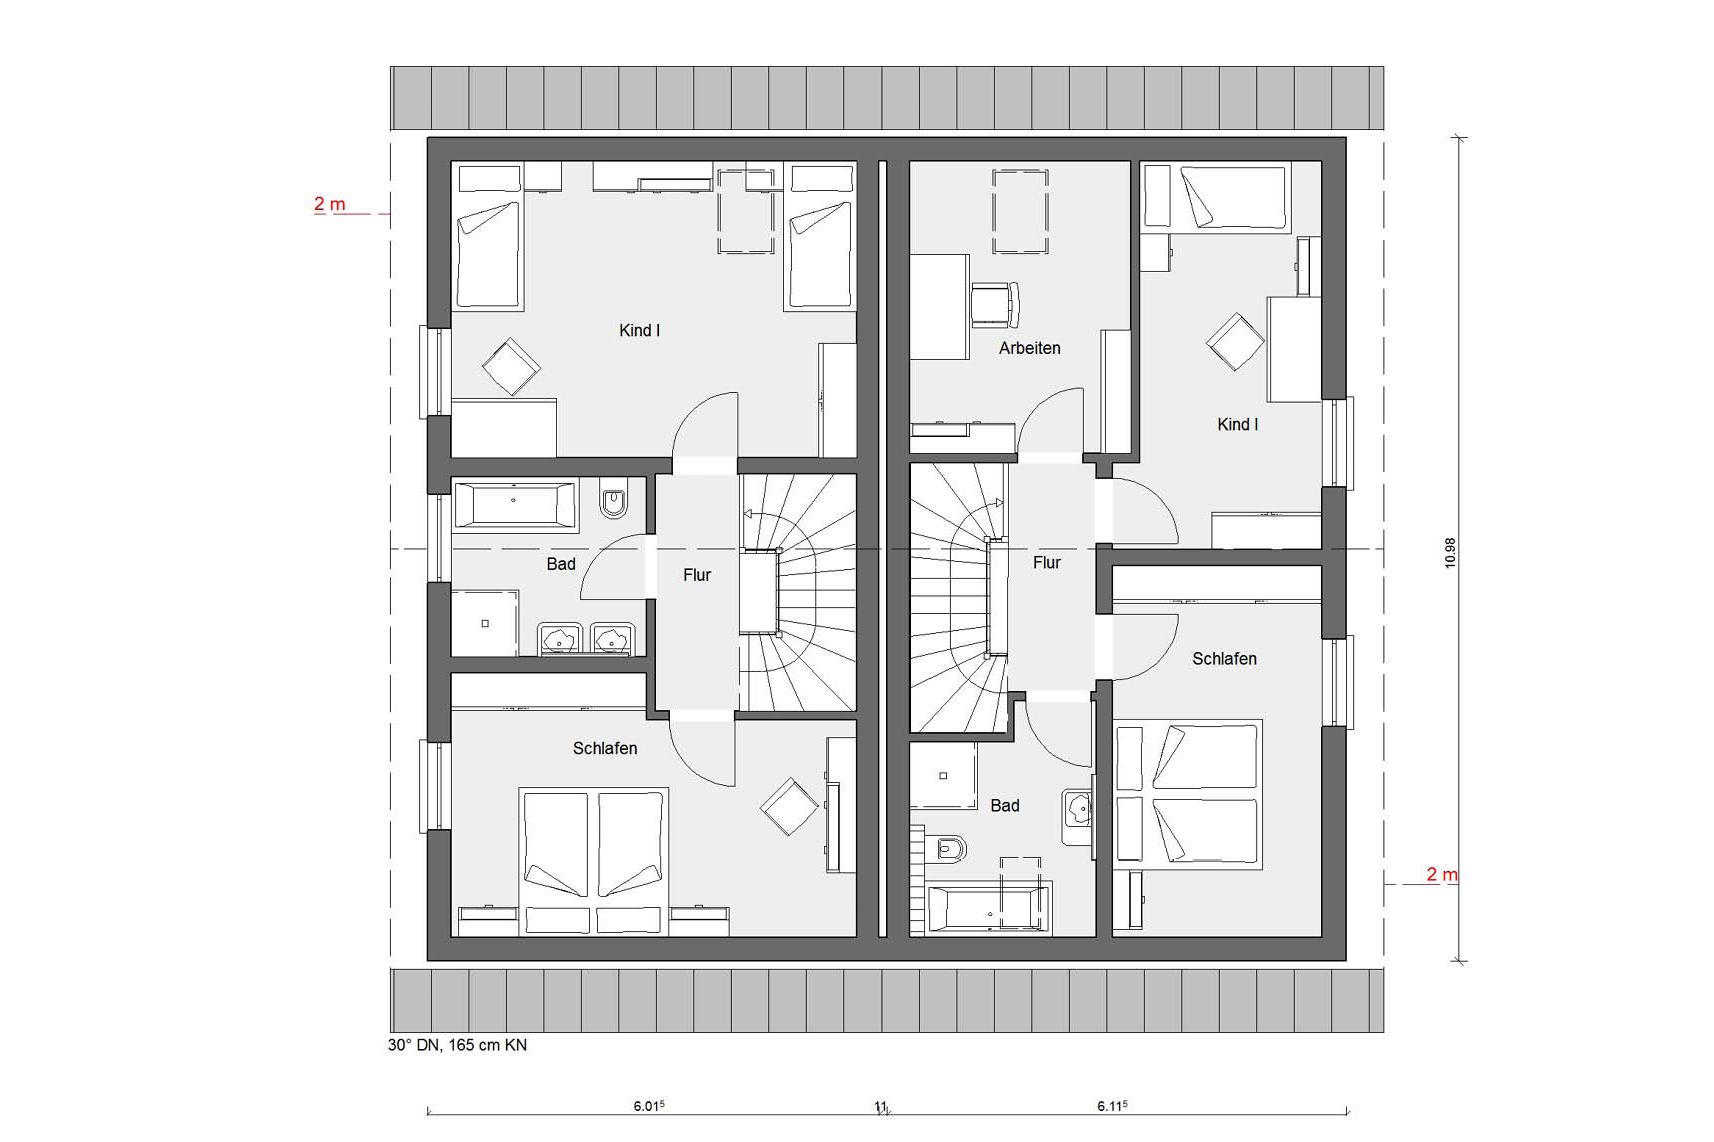 Plan d'étage rez-de-chaussée D 15-106.1 / D 15-108.1 Petite maison jumelée